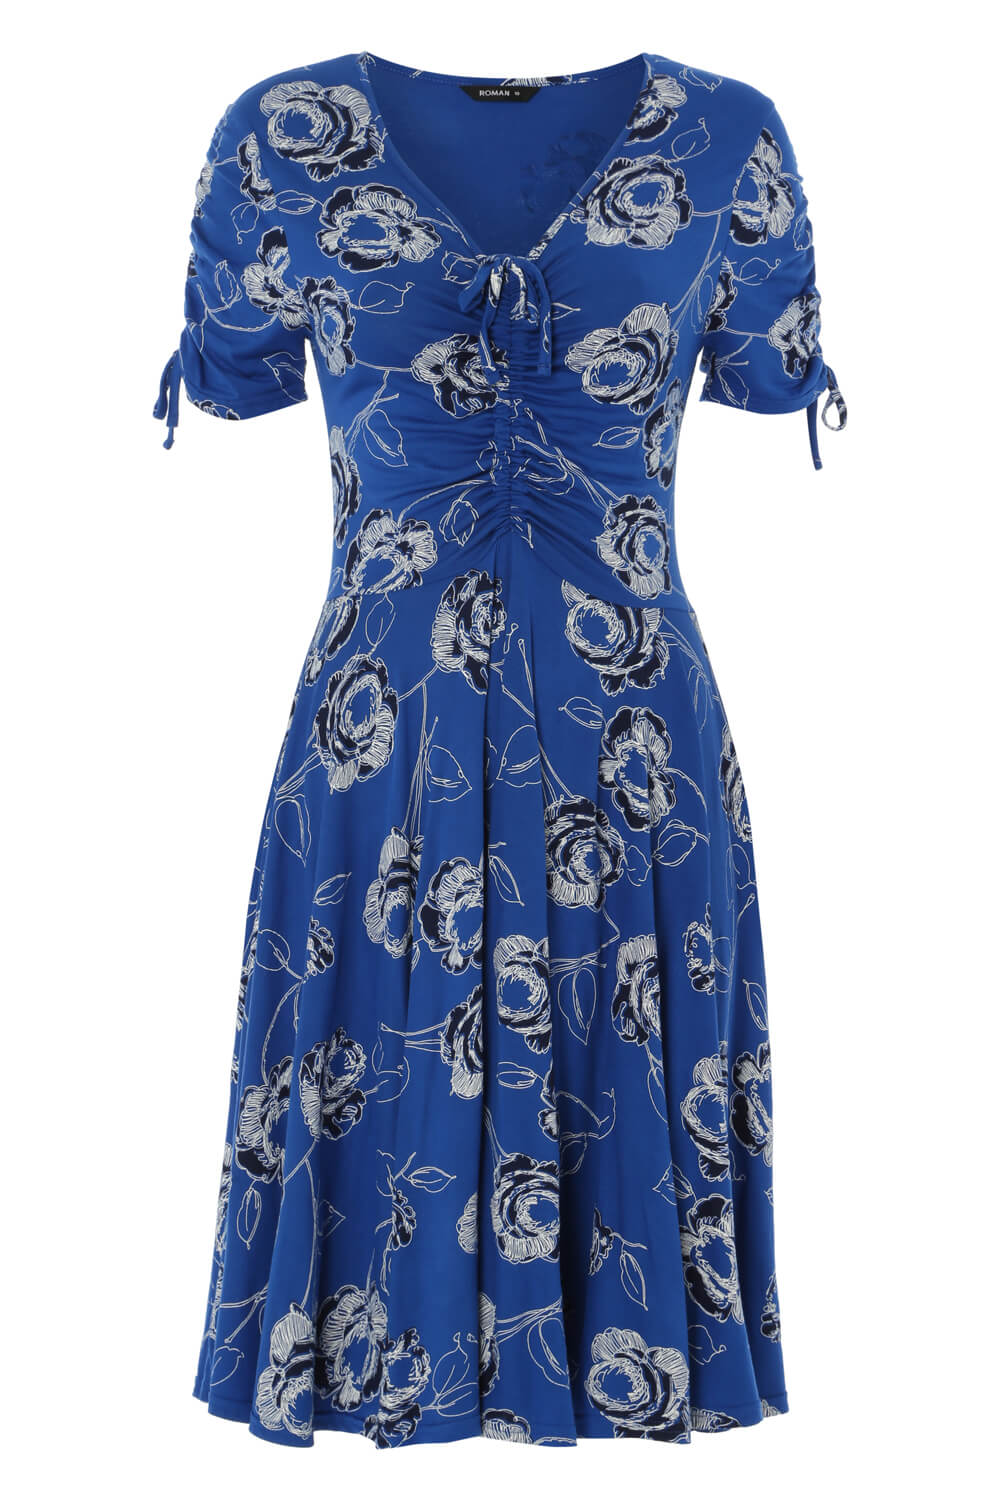 Rose Print Tea Dress in Royal Blue - Roman Originals UK